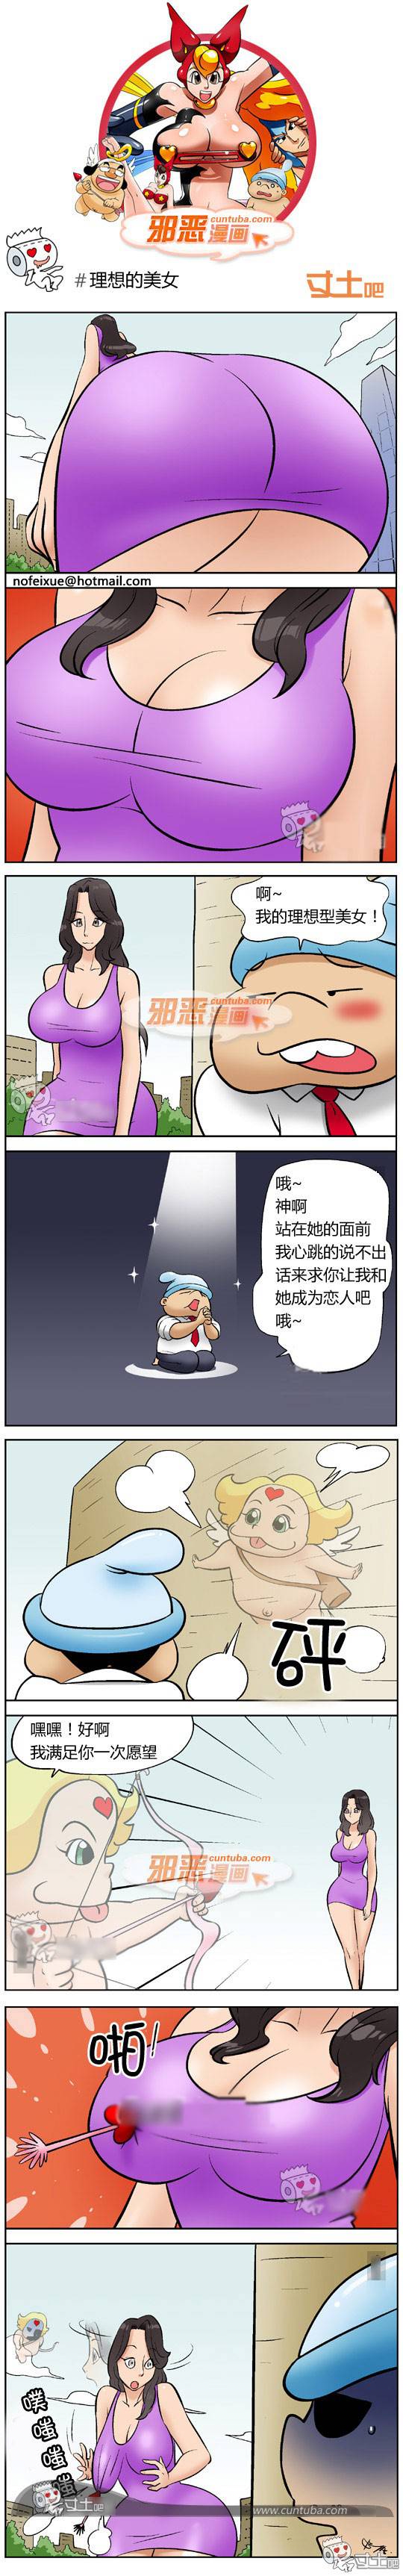 邪恶漫画爆笑囧图第245刊：世界杯 抵挡不住的诱惑